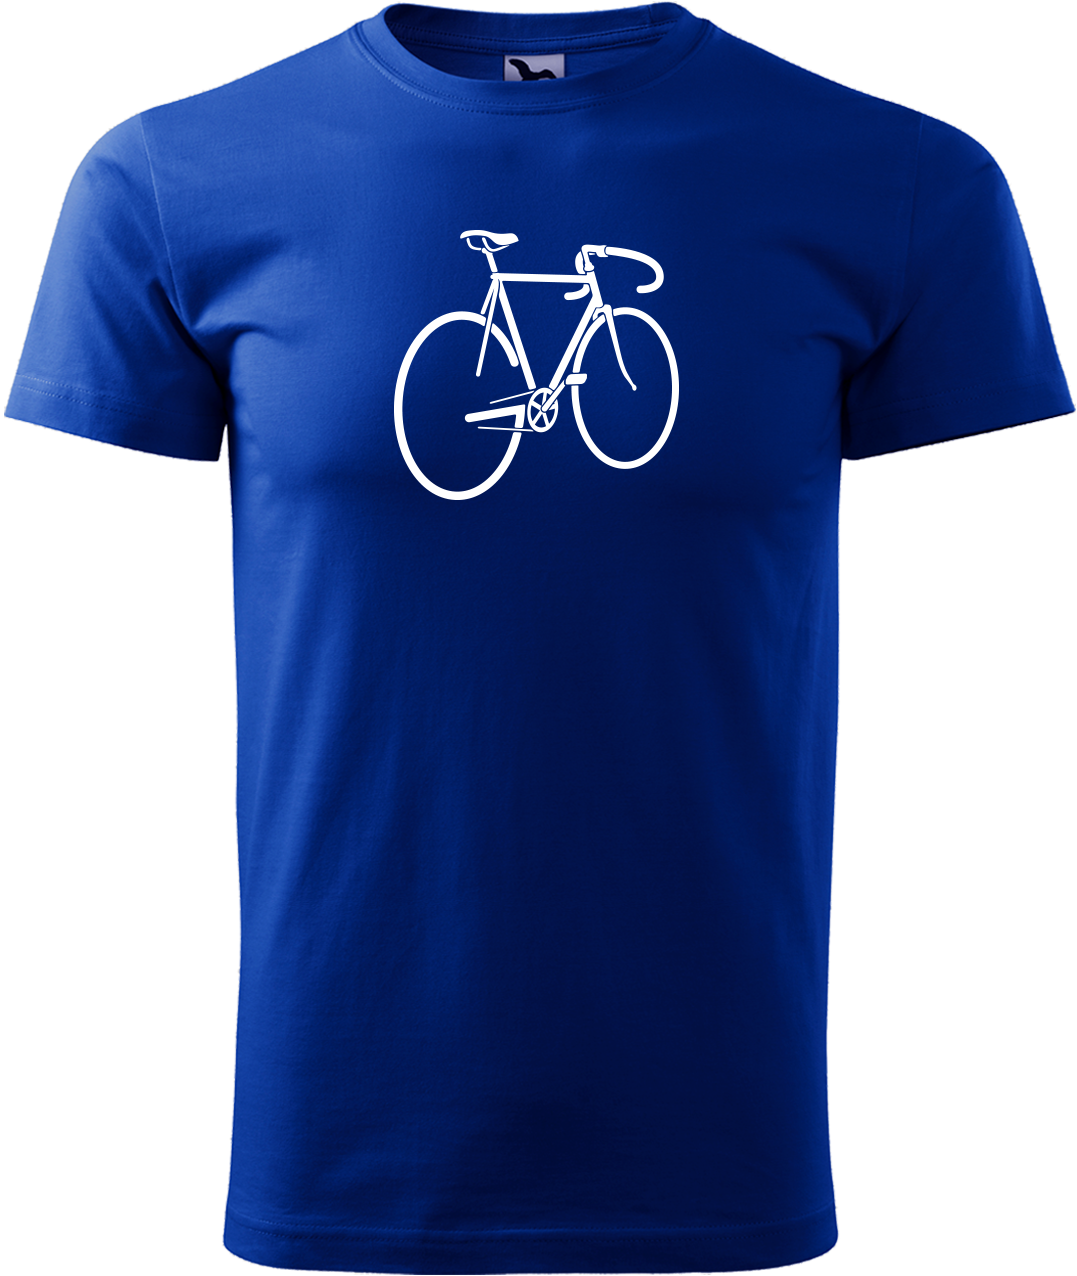 Pánské tričko s kolem - Pánské kolo Velikost: L, Barva: Královská modrá (05)